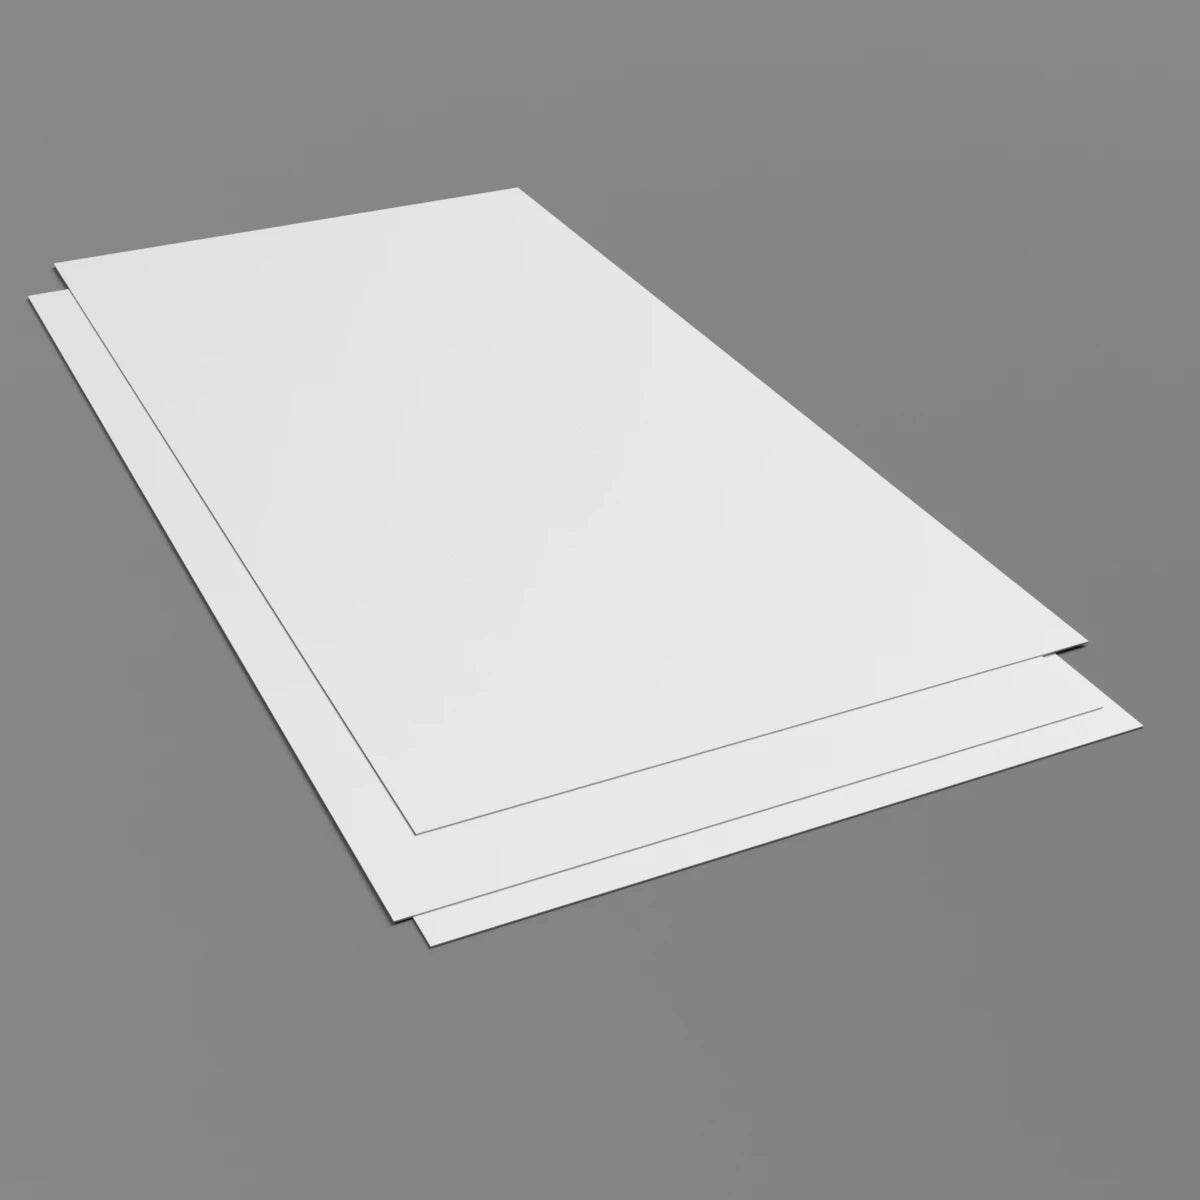 3mm White Hygienic Wall Cladding Sheet